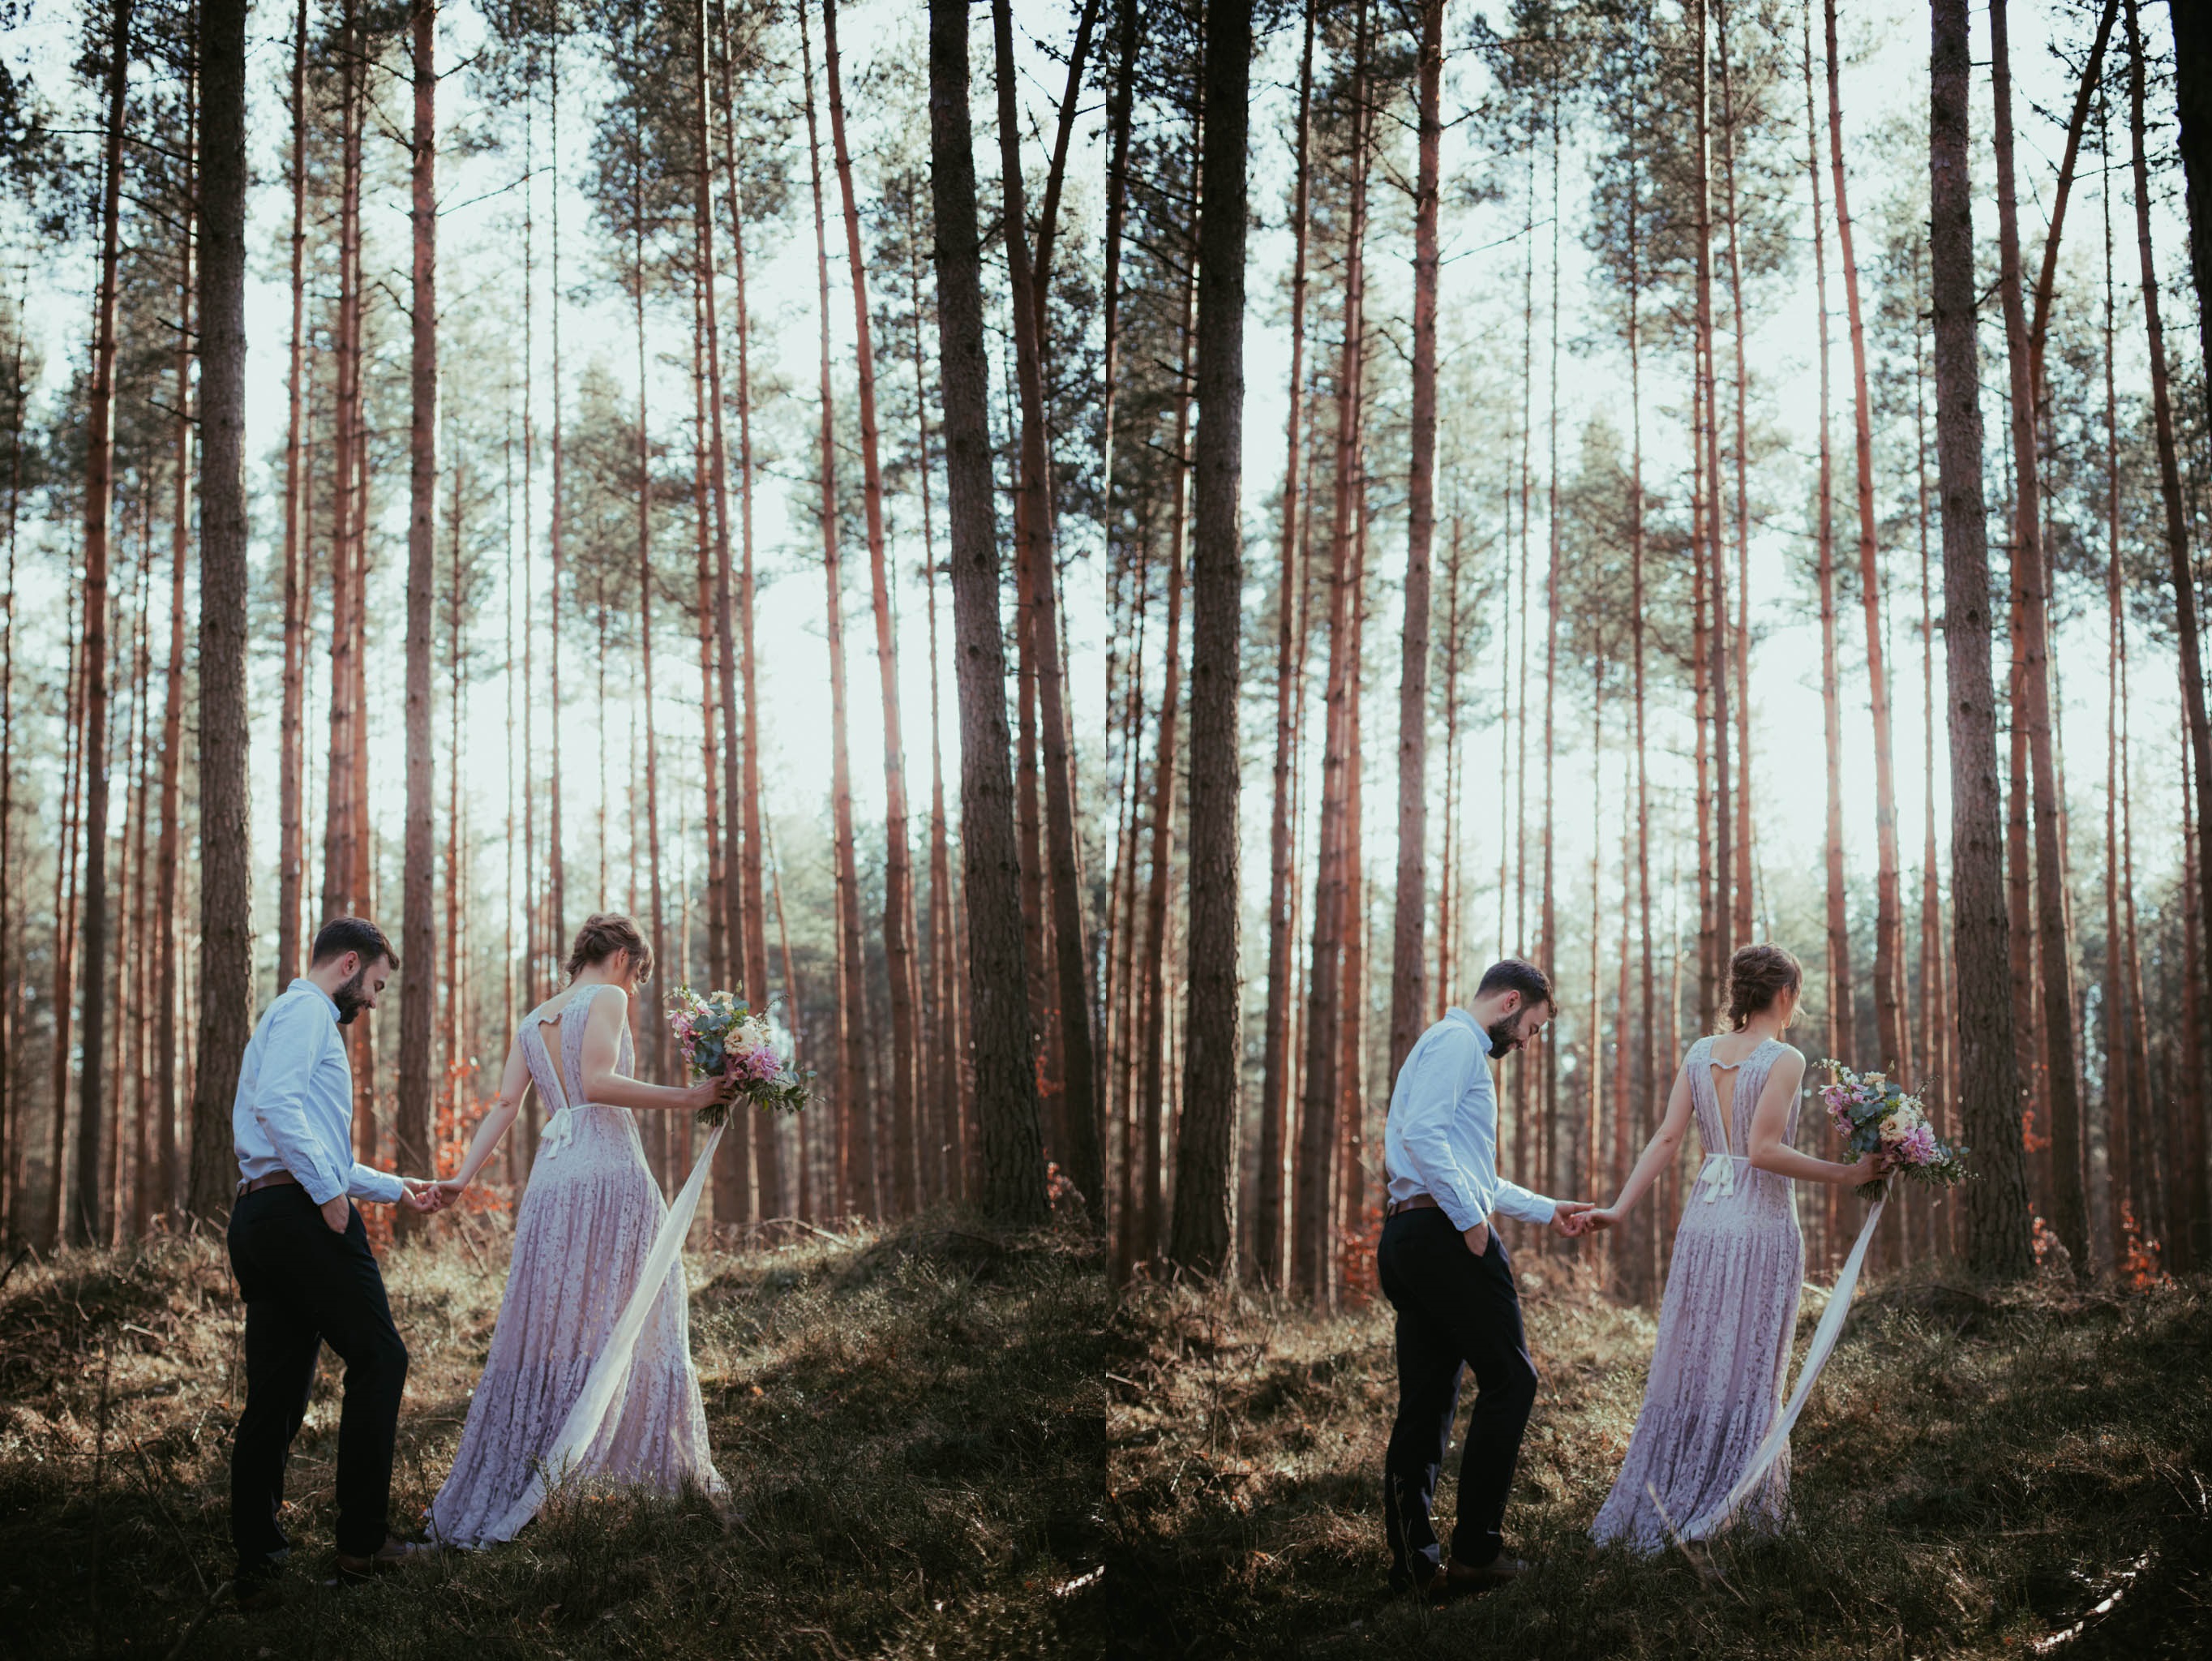 Свадебный прием в лесу с намеком на волшебство был в моей голове очень давно